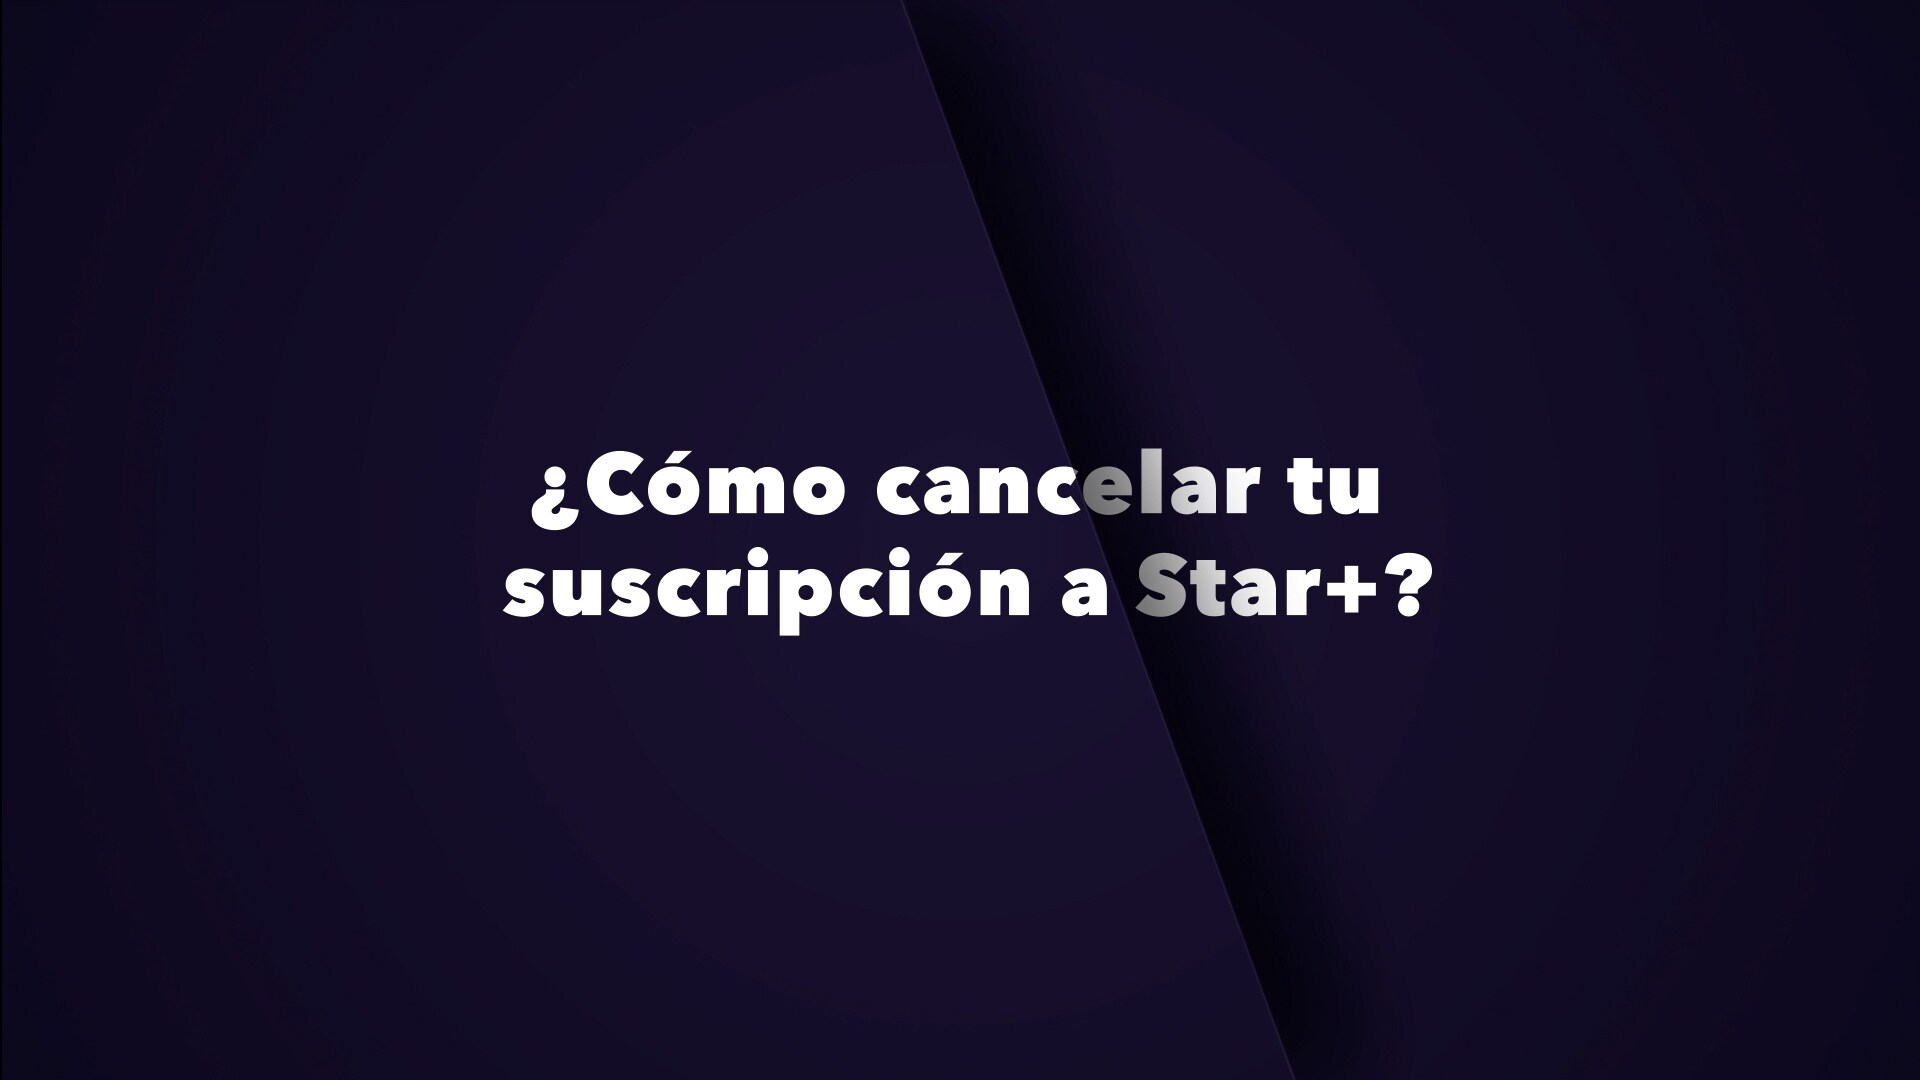 ¿Cómo cancelar tu suscripción a Star+?